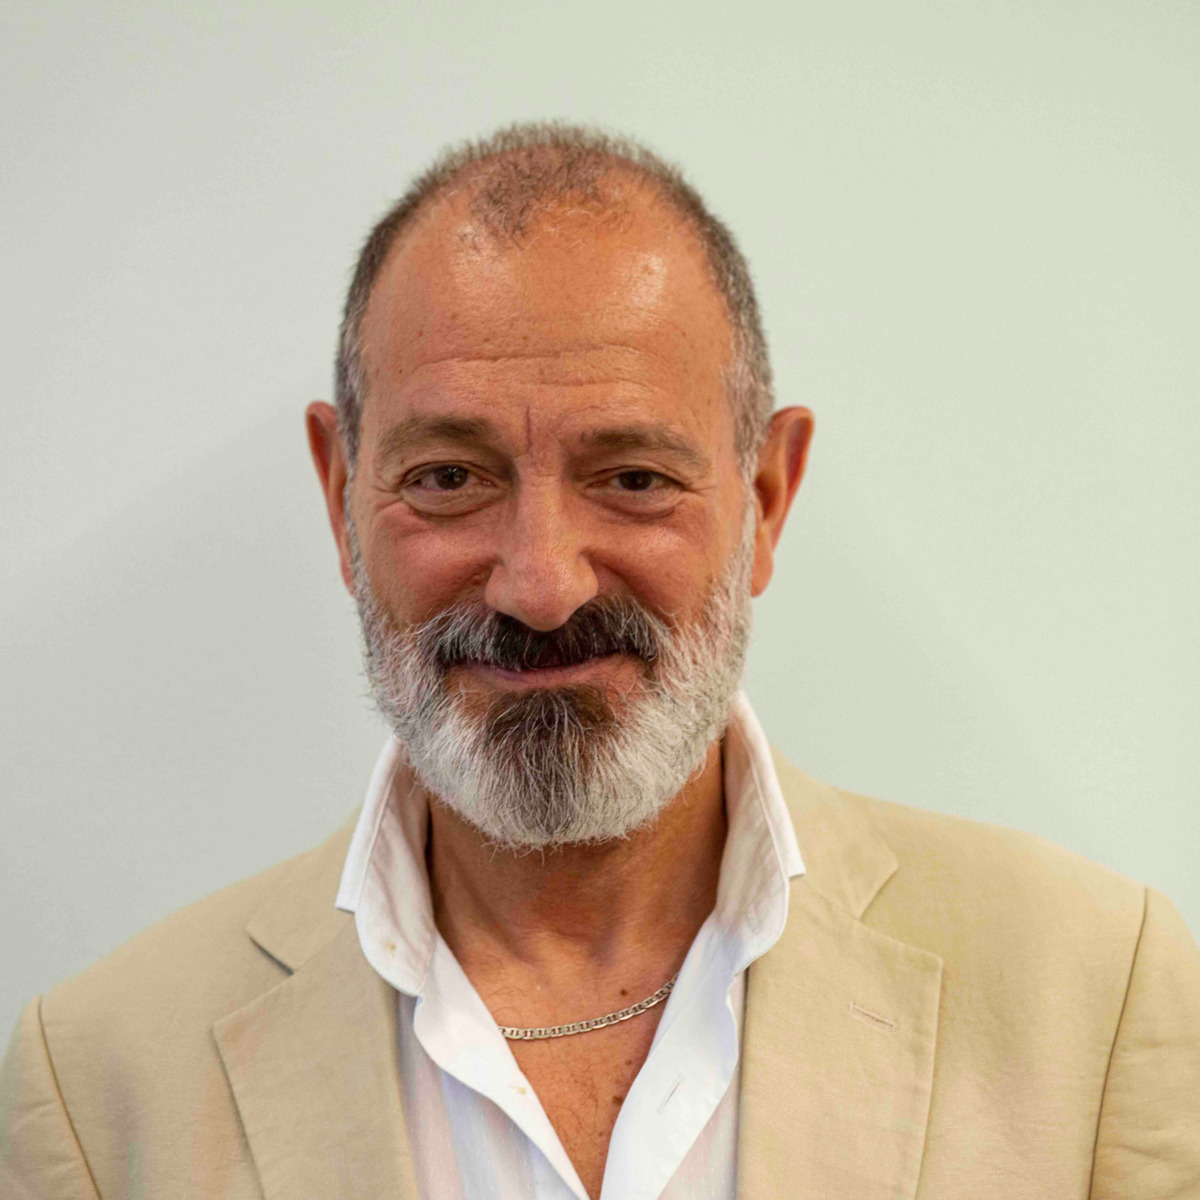  Ricardo Sanchez Martín